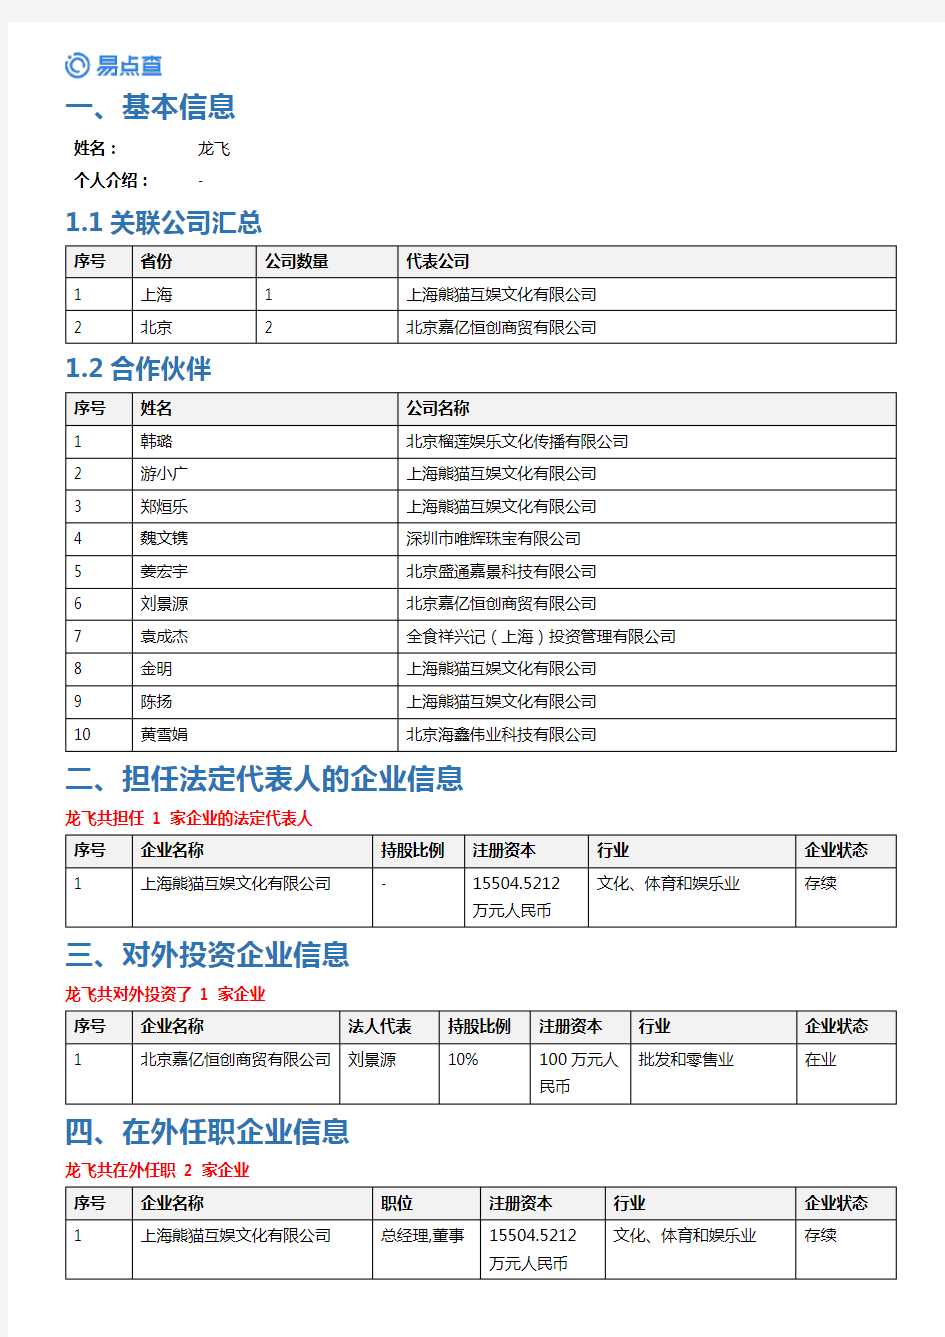 上海熊猫互娱文化有限公司-龙飞投资任职及风险报告